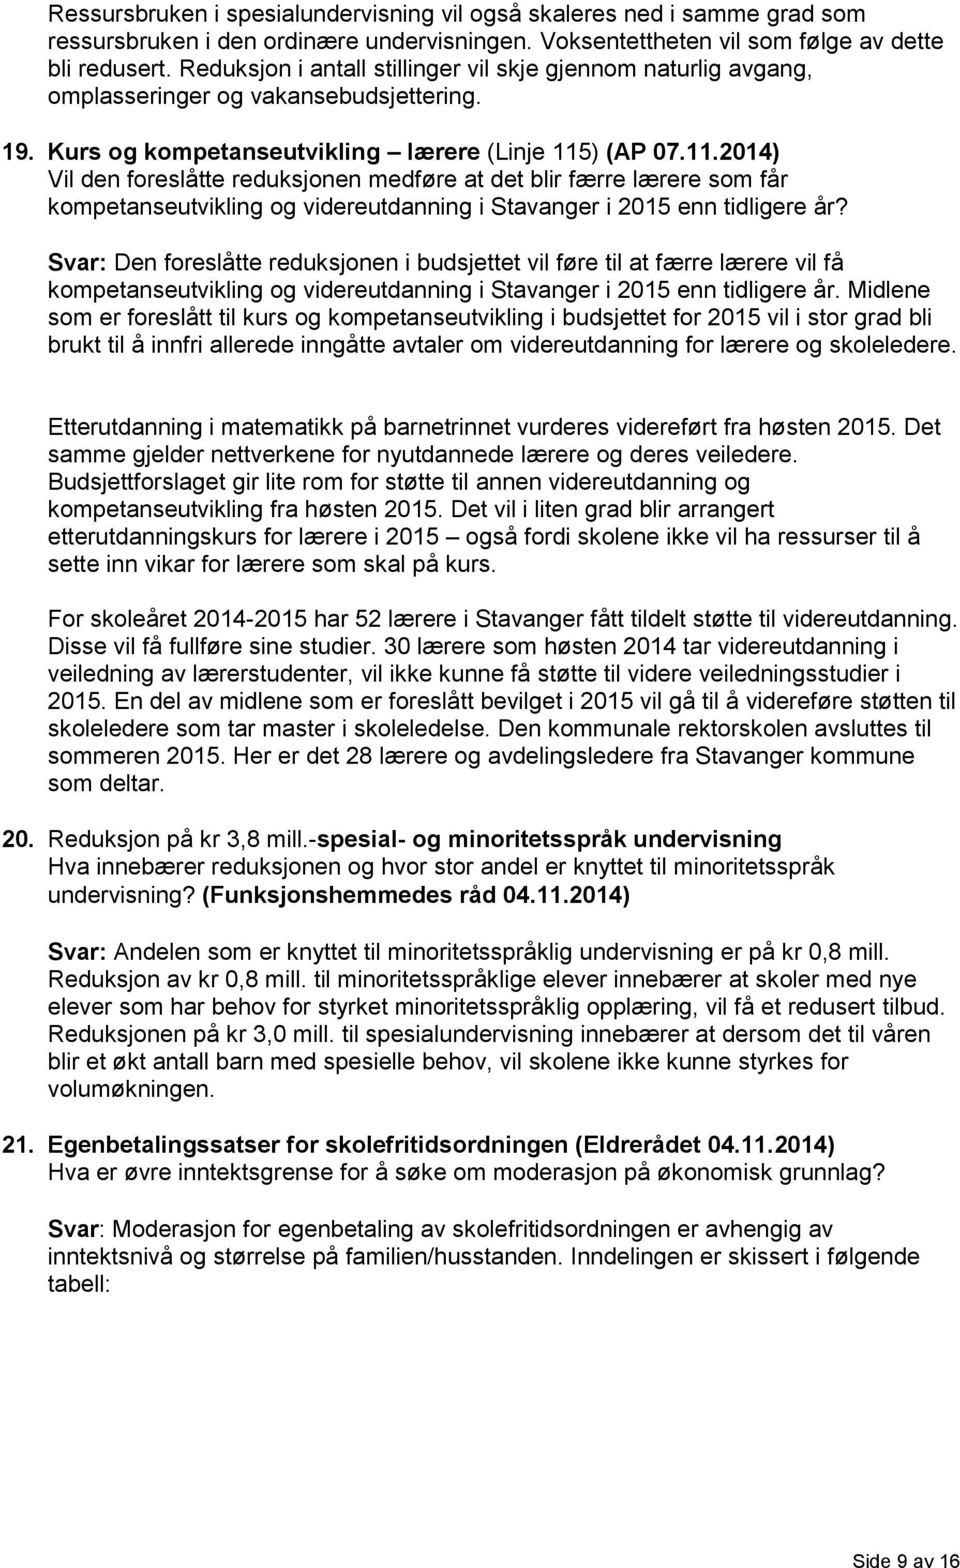 ) (AP 07.11.2014) Vil den foreslåtte reduksjonen medføre at det blir færre lærere som får kompetanseutvikling og videreutdanning i Stavanger i 2015 enn tidligere år?